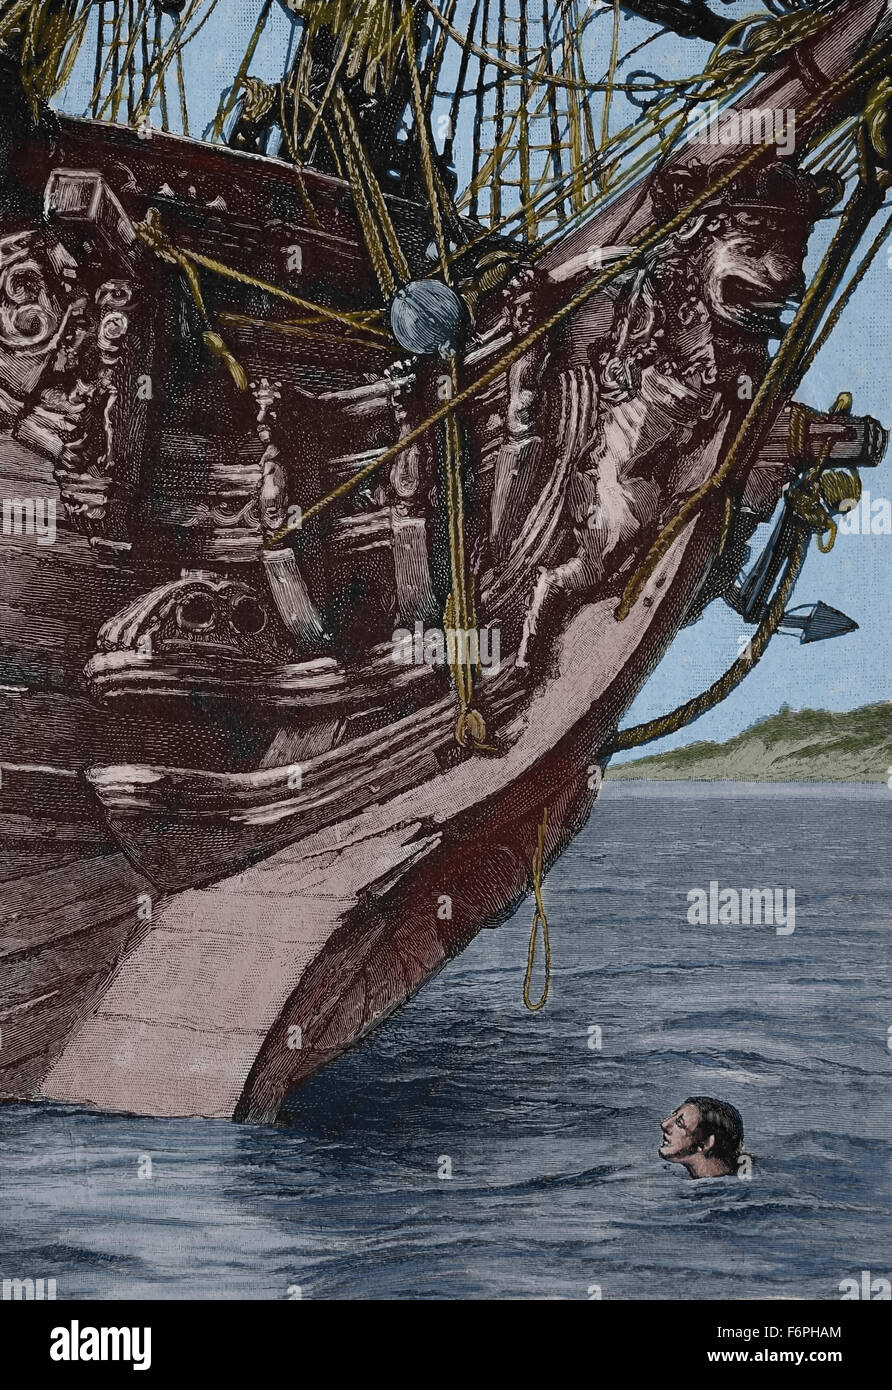 Robinson Crusoe. Roman von Daniel Defoe, veröffentlicht, 1719. "Ich erblickte ein kleines Stück Seil". Illustriert von Walter Paget. Farbe. Stockfoto